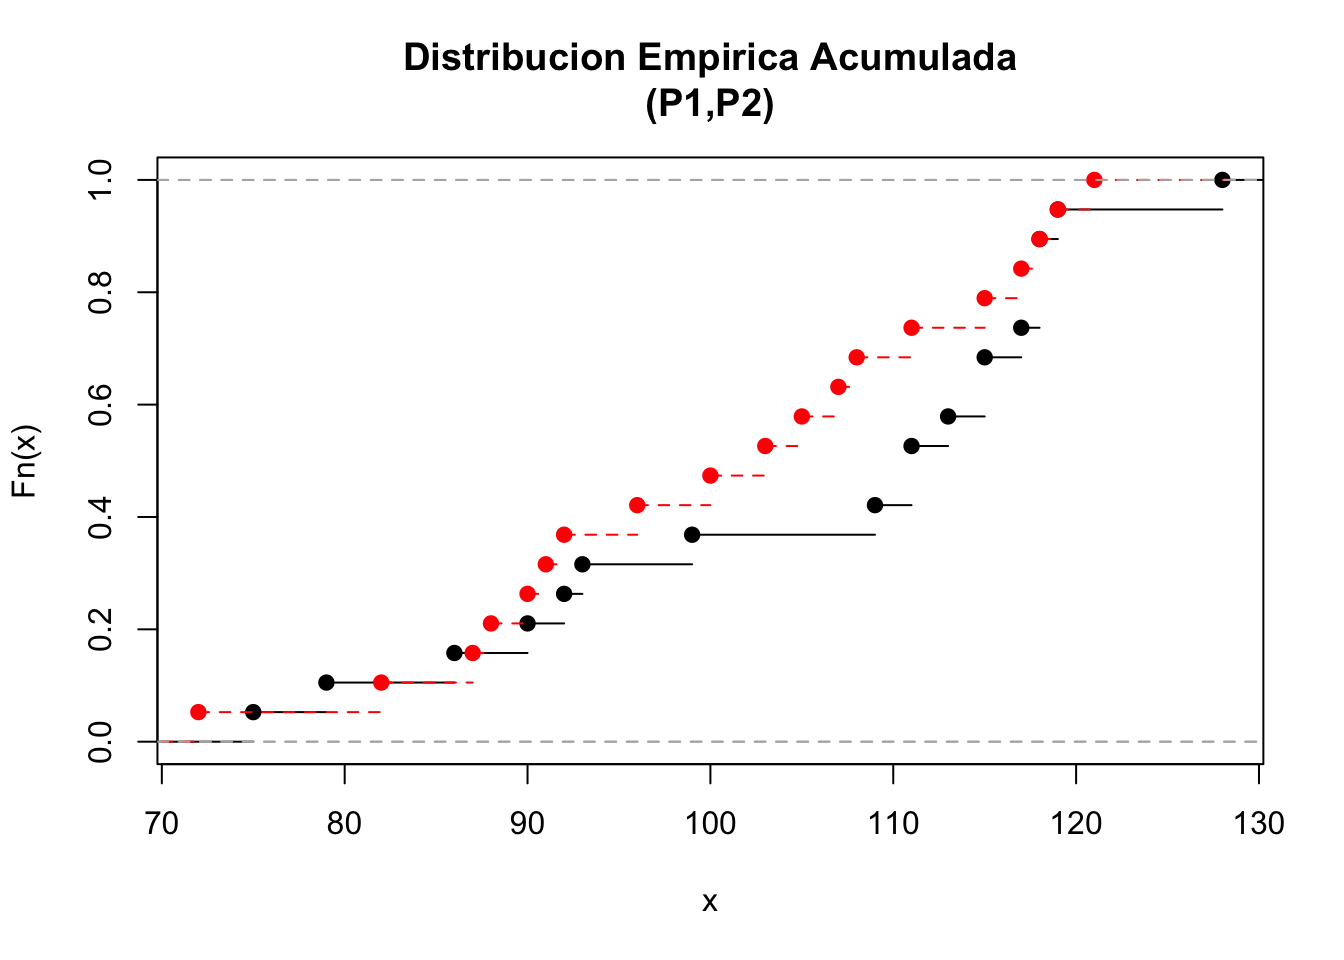 Distribución empírica acumulada para los vectores P1 y P2